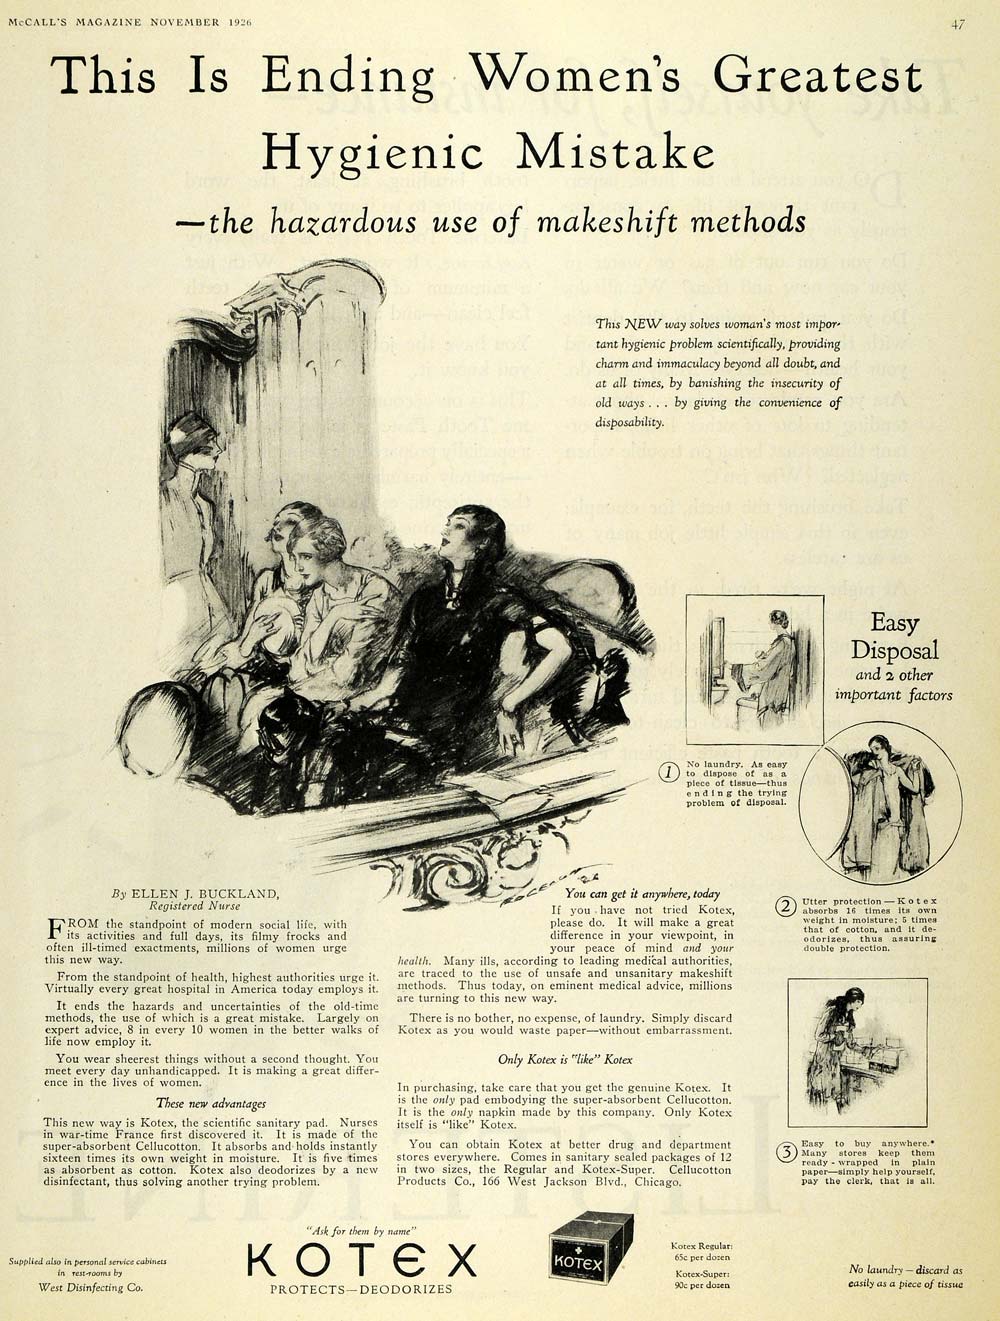 1926 Ad West Disinfecting Kotex Pads Cellucotton Price - ORIGINAL MCC4